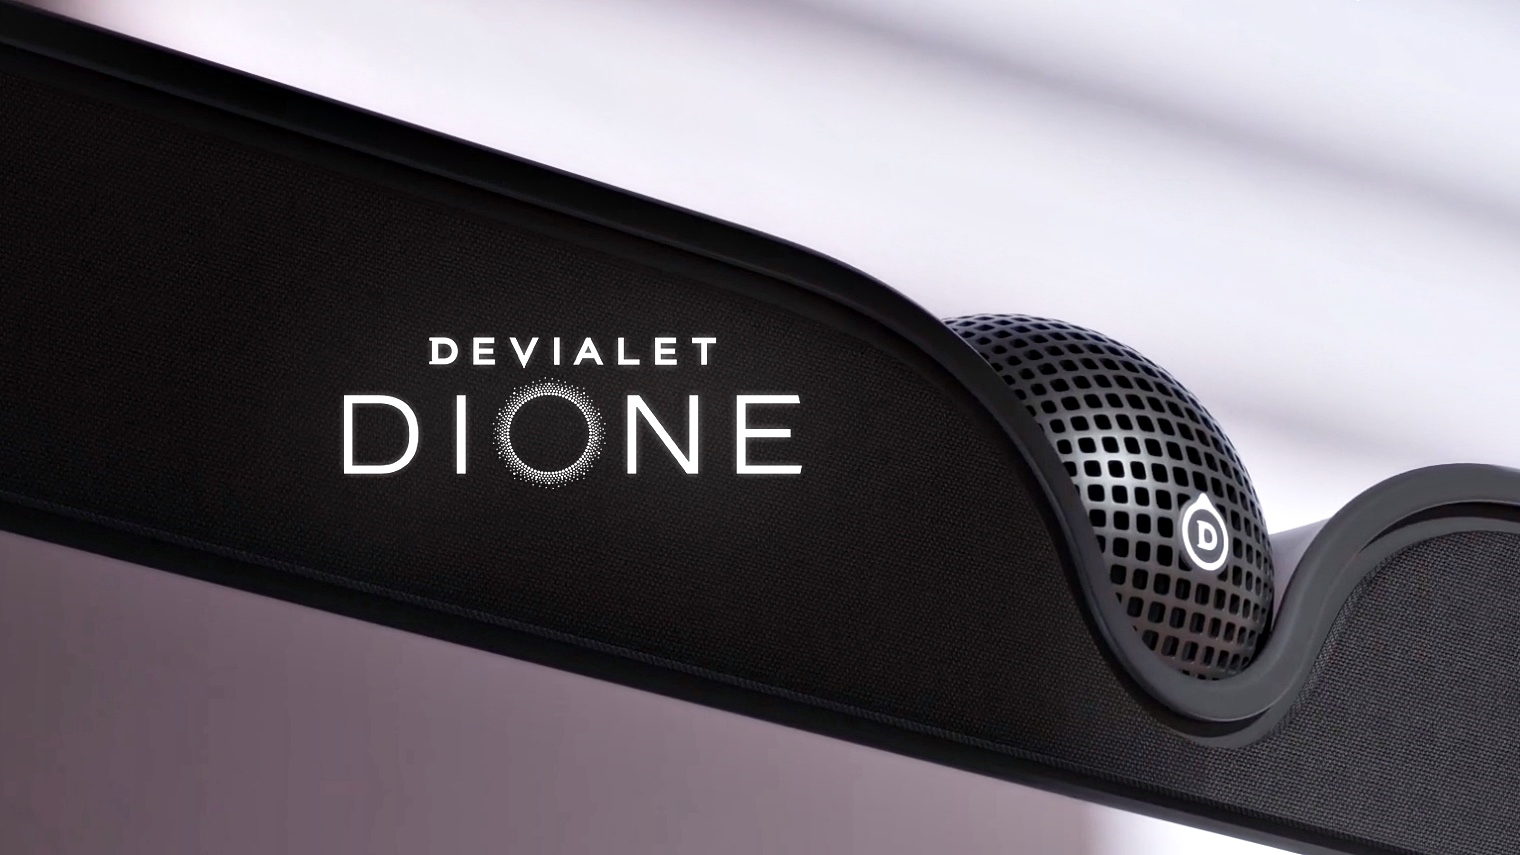 Devialet ra mắt loa soundbar 5.1.2 Dione: sang trọng, hỗ trợ đầy đủ công nghệ mới, giá $2400